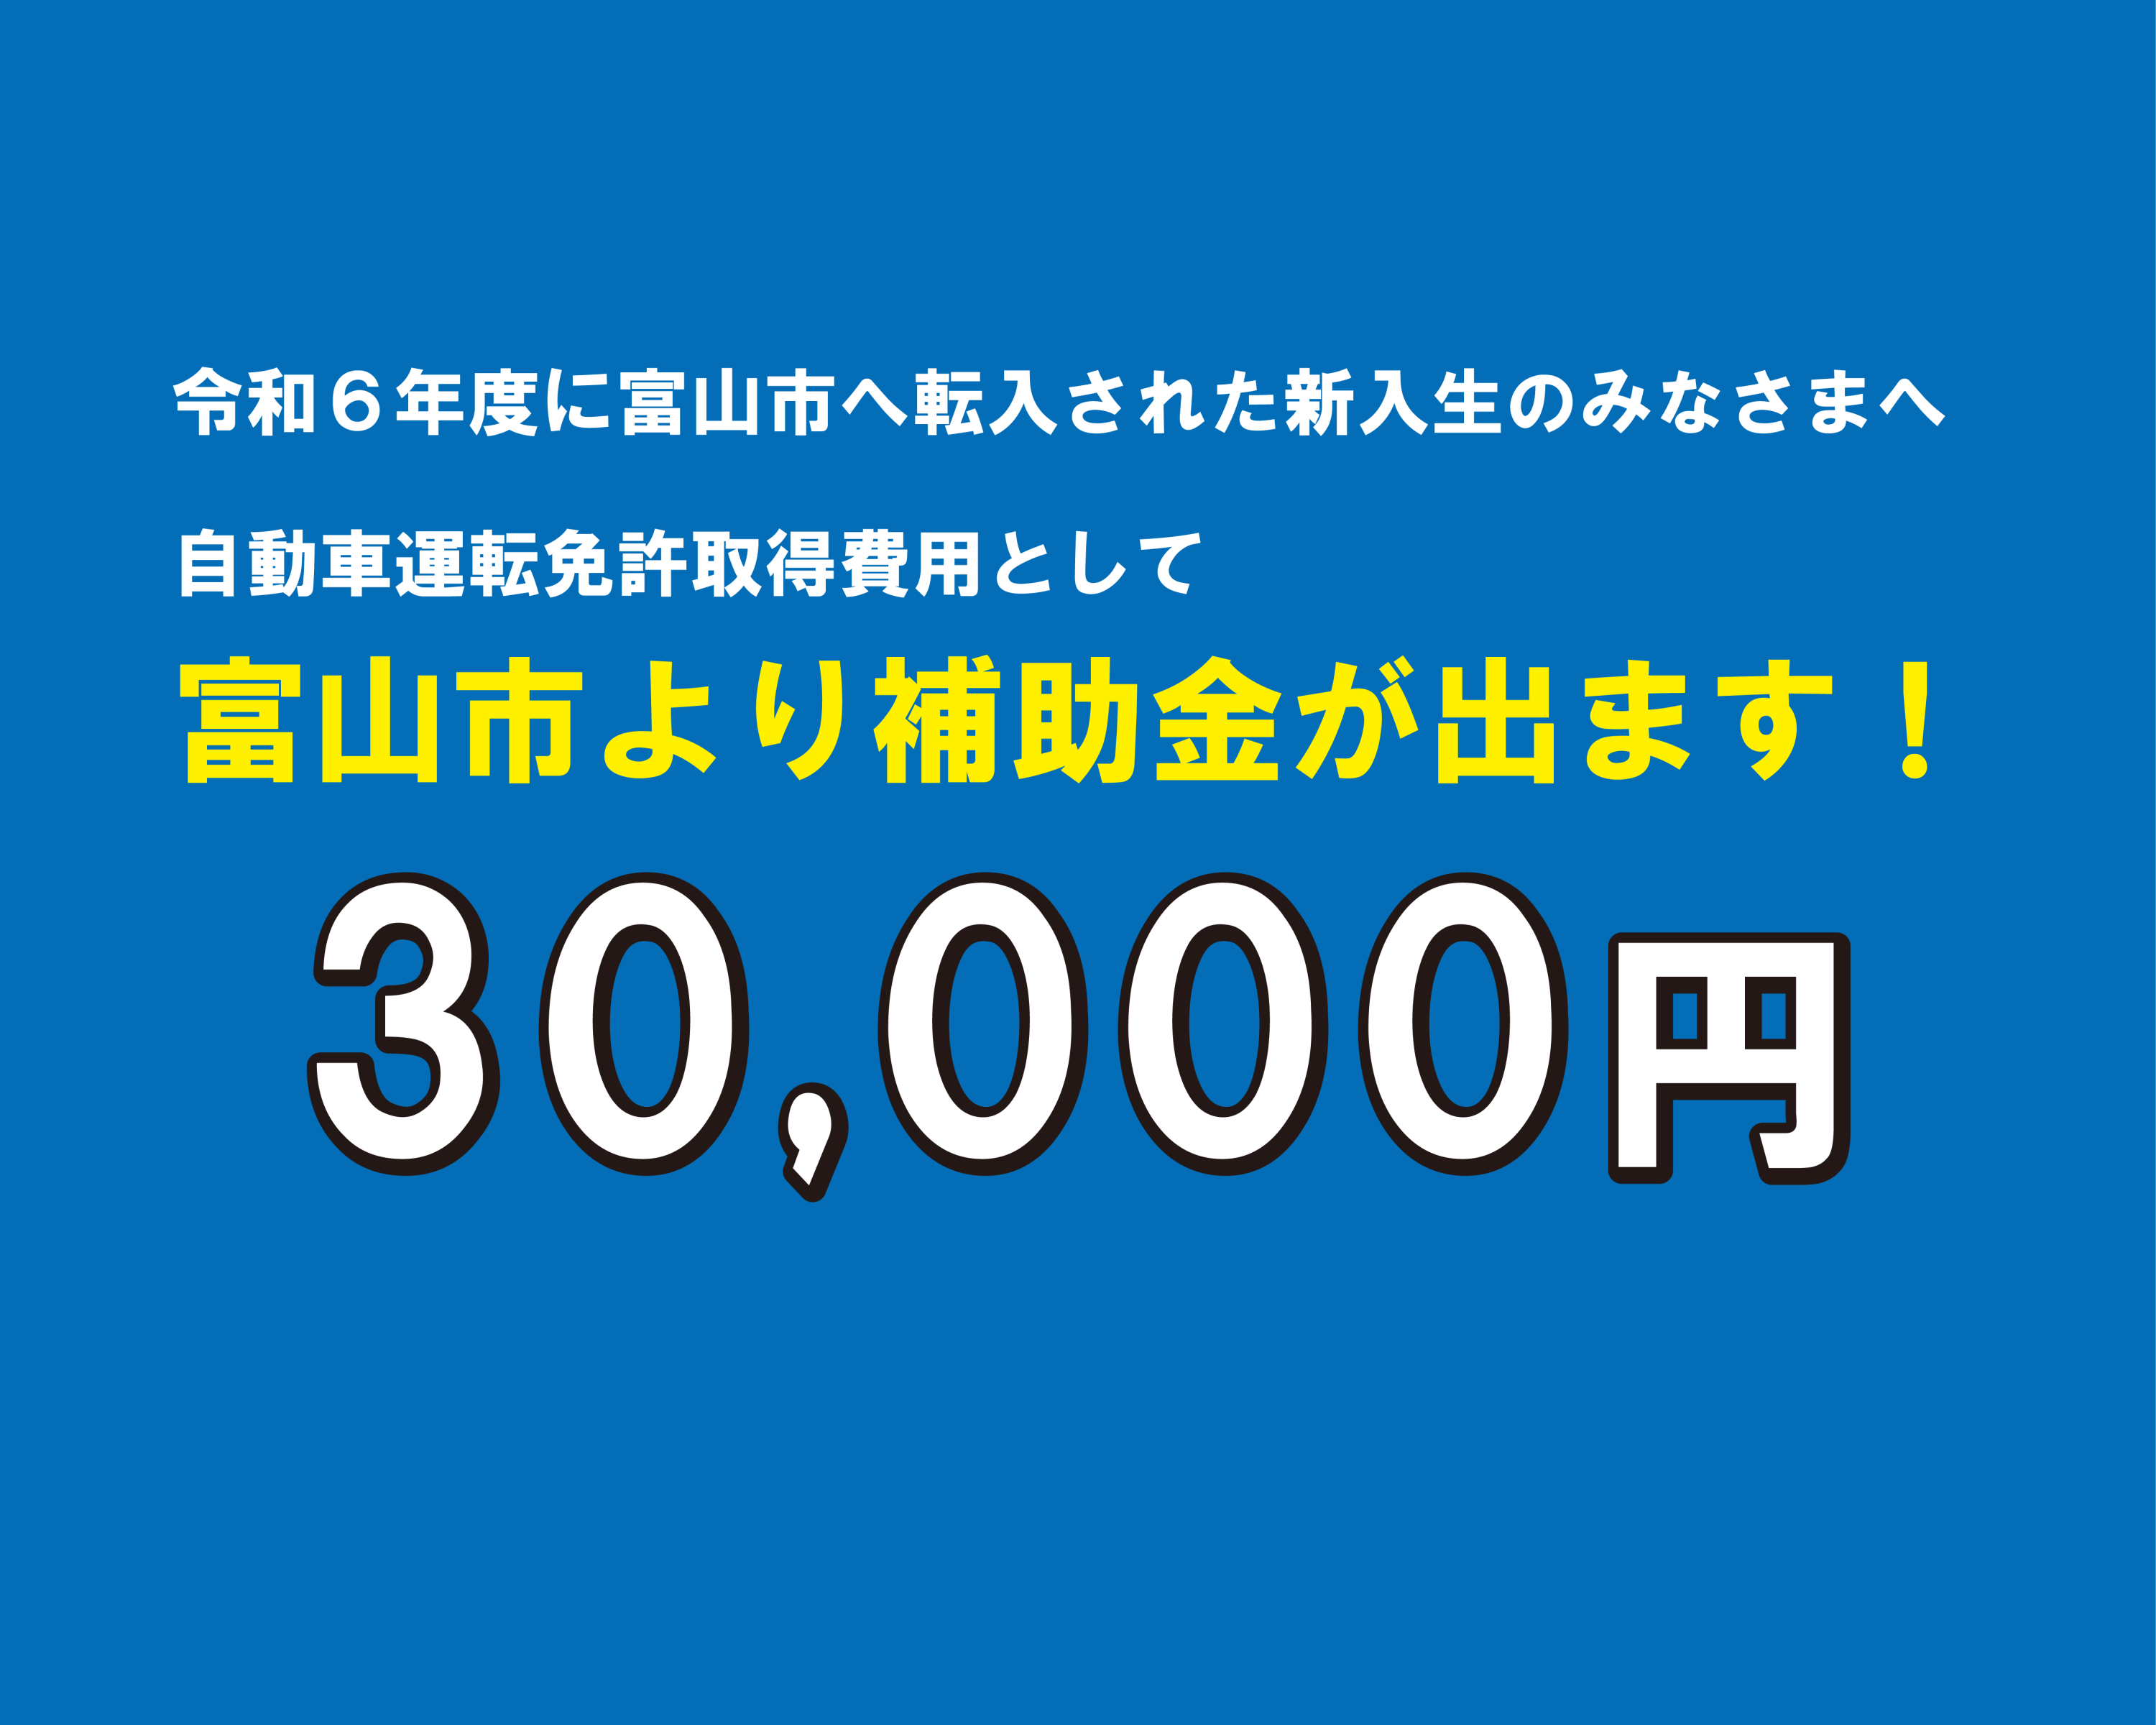 令和6年度に富山市へ転入された新入生のみなさまへ　30,000円の補助金のお知らせです。